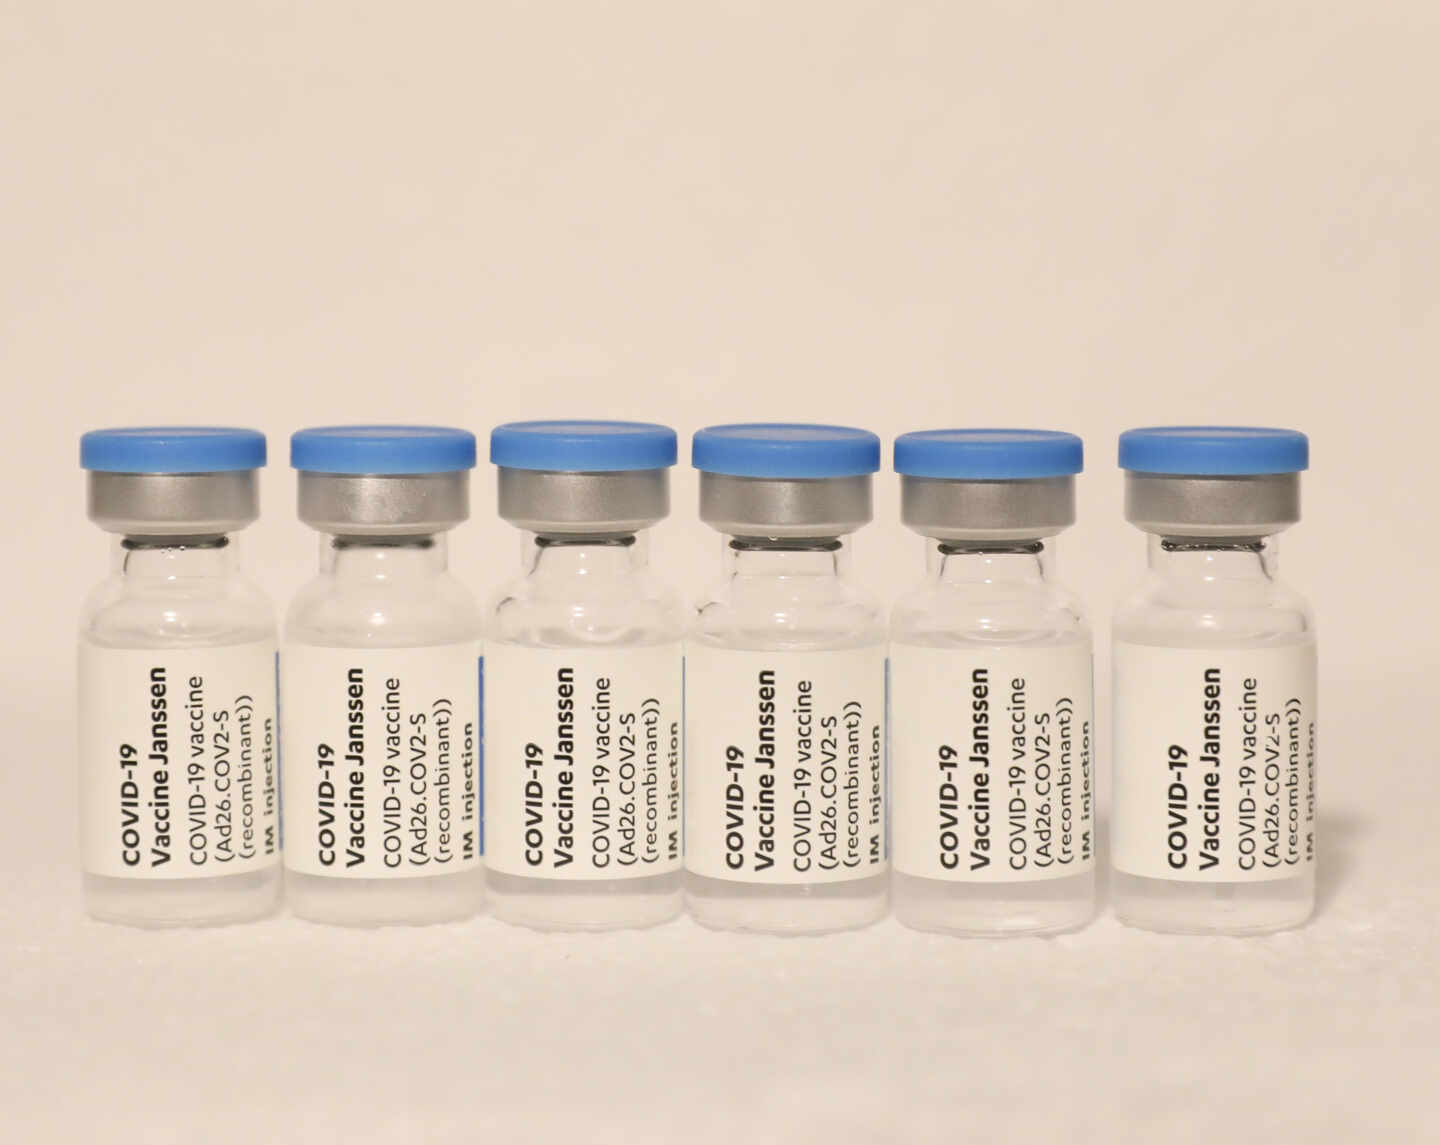 Imagen de viales de la vacuna de Moderna contra el Covid-19